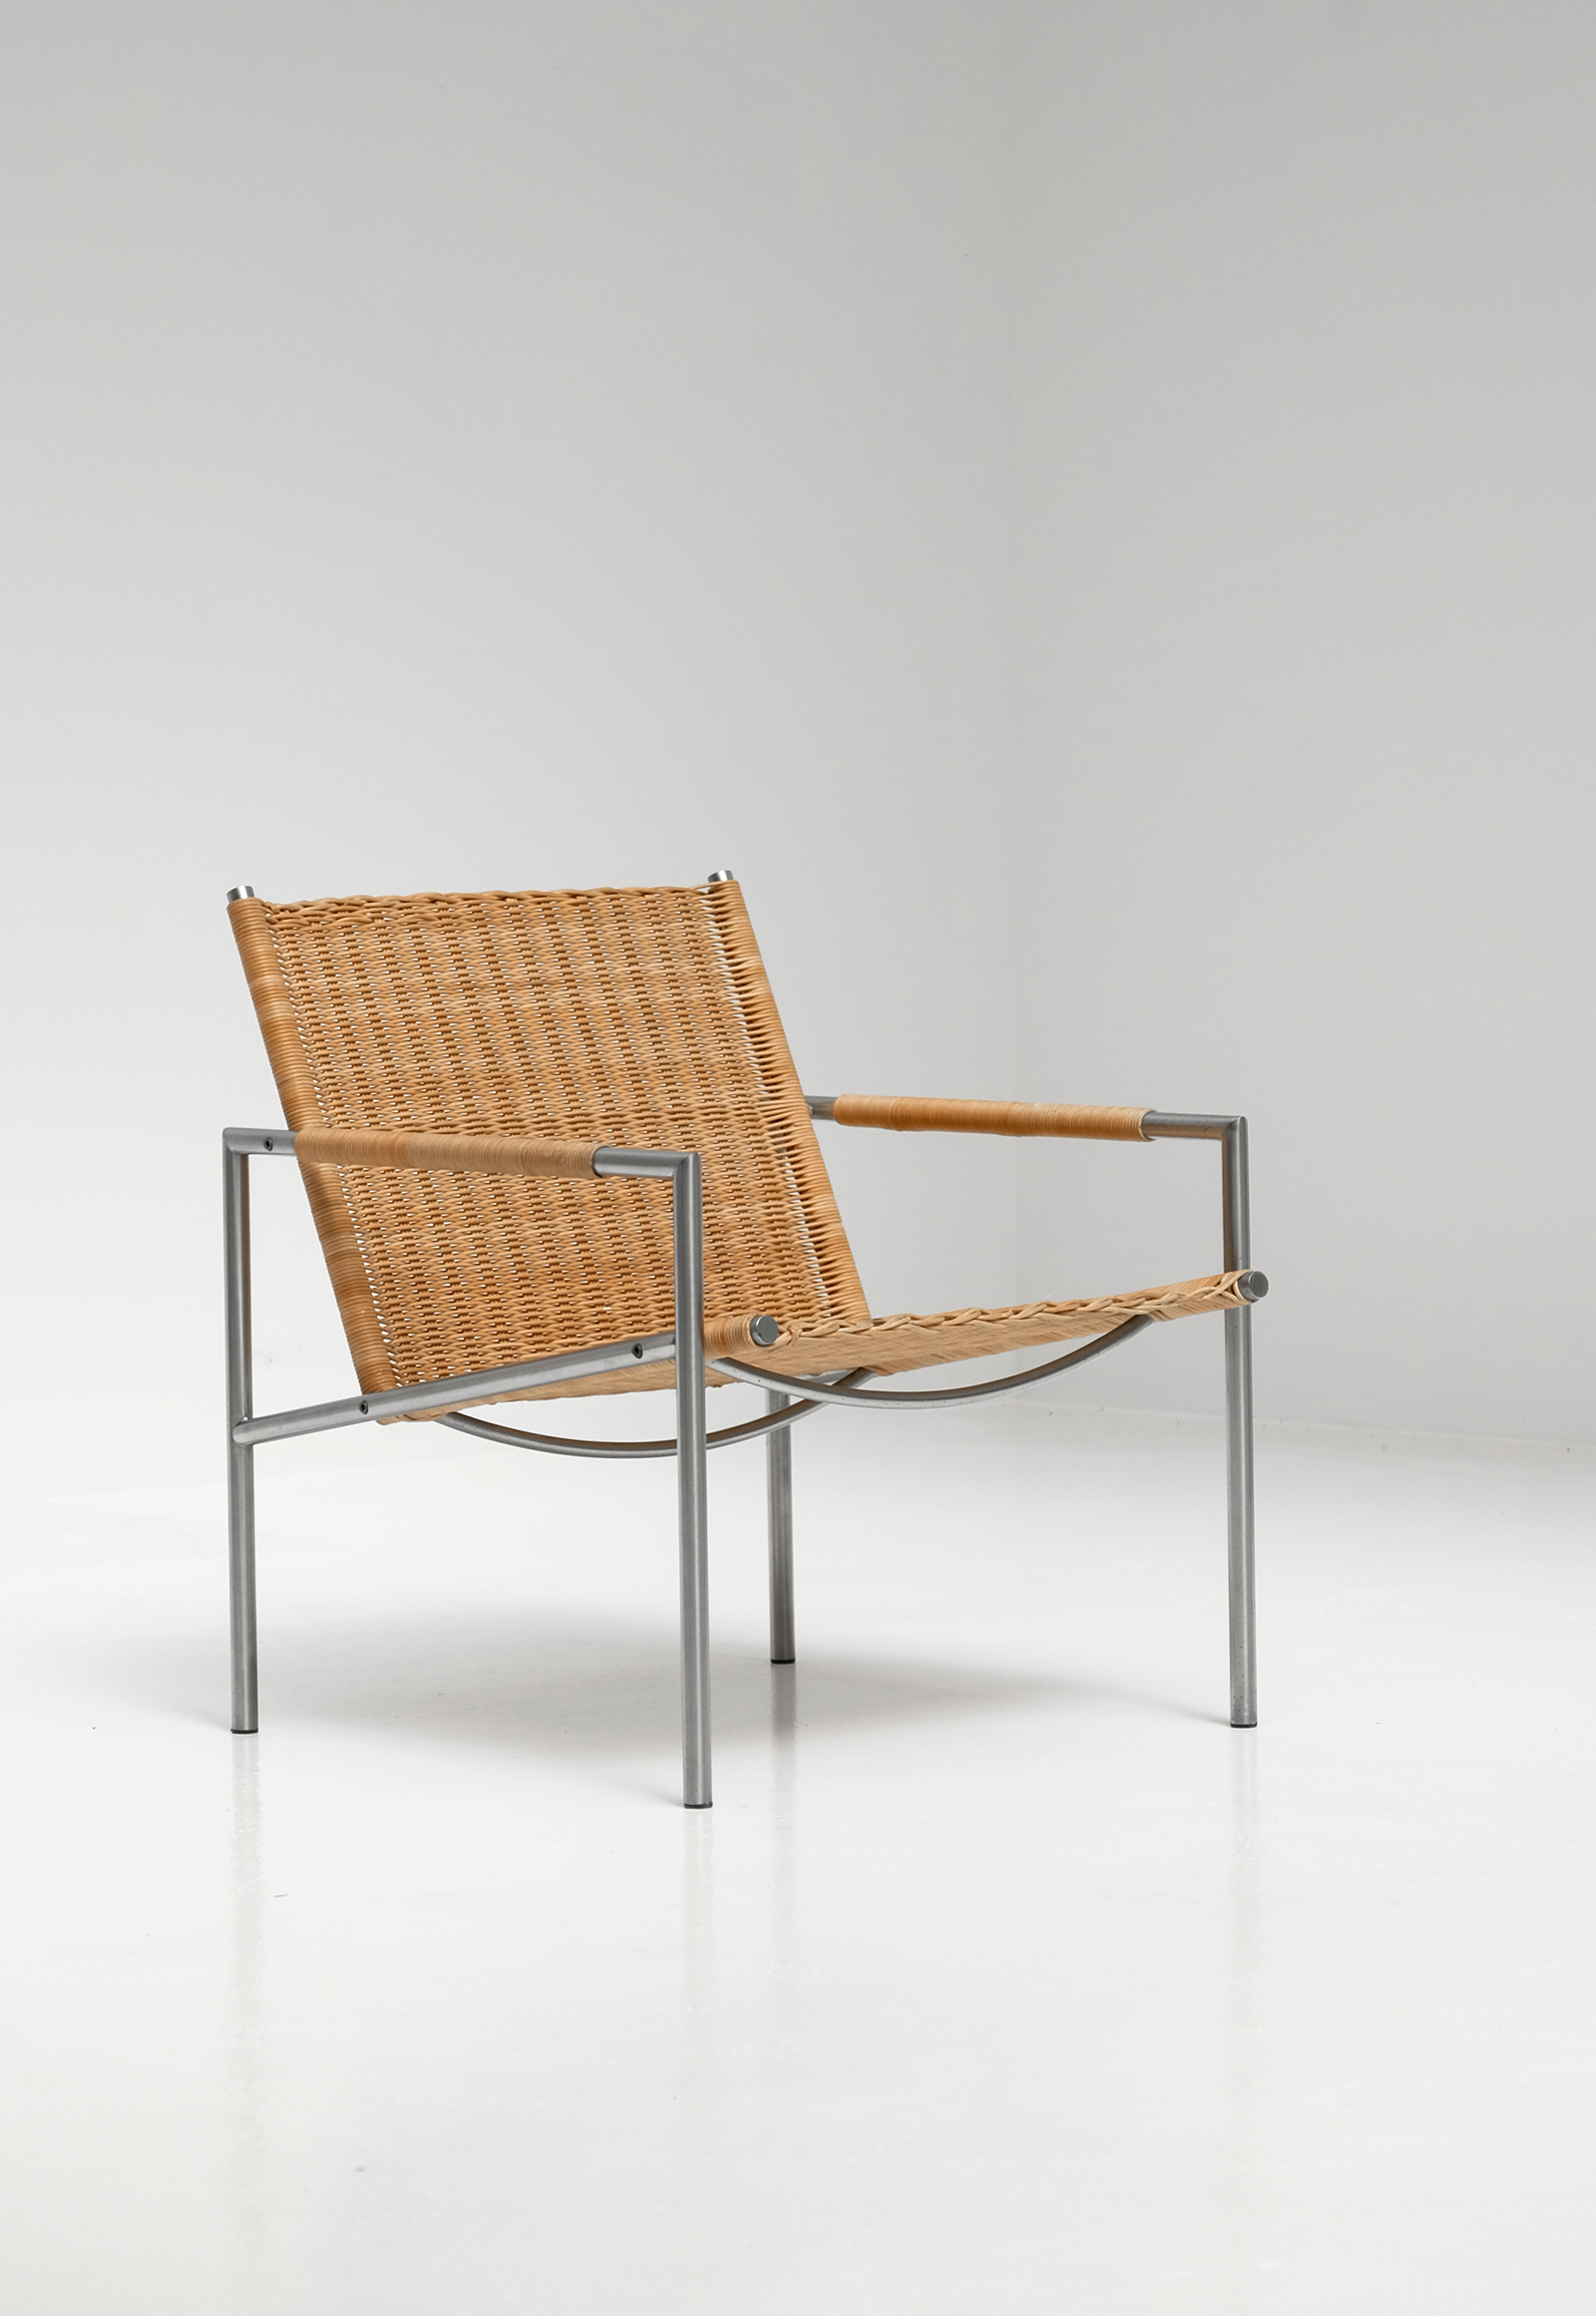 Martin Visser sz01 Lounge chairimage 3